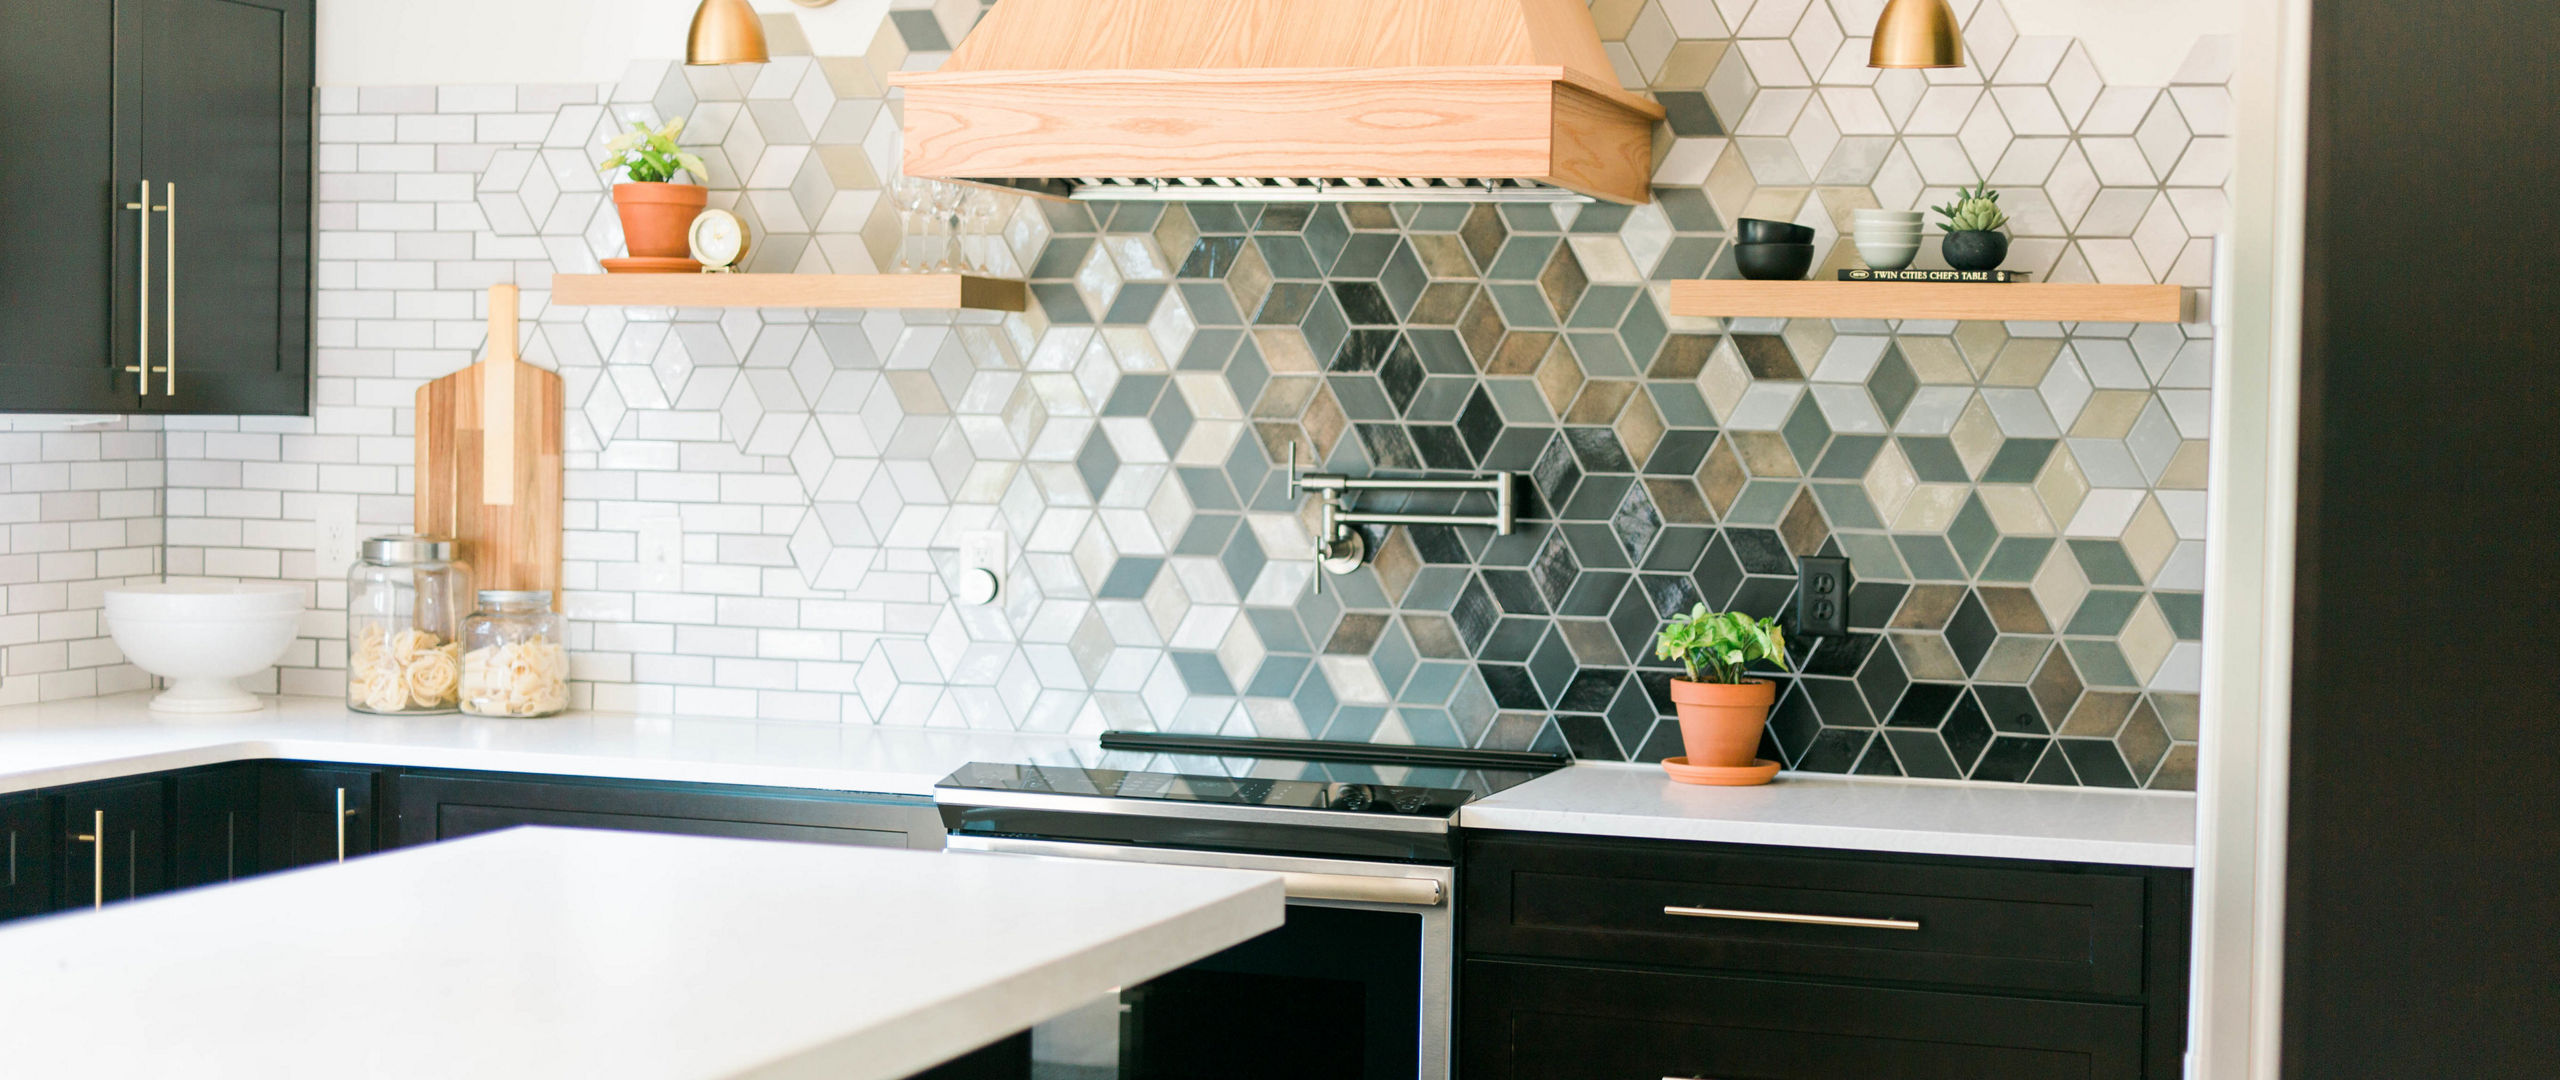 A kitchen with black cabinets, a colorful tile backsplash, gold fixtures and Delgatie Matte quartz countertops